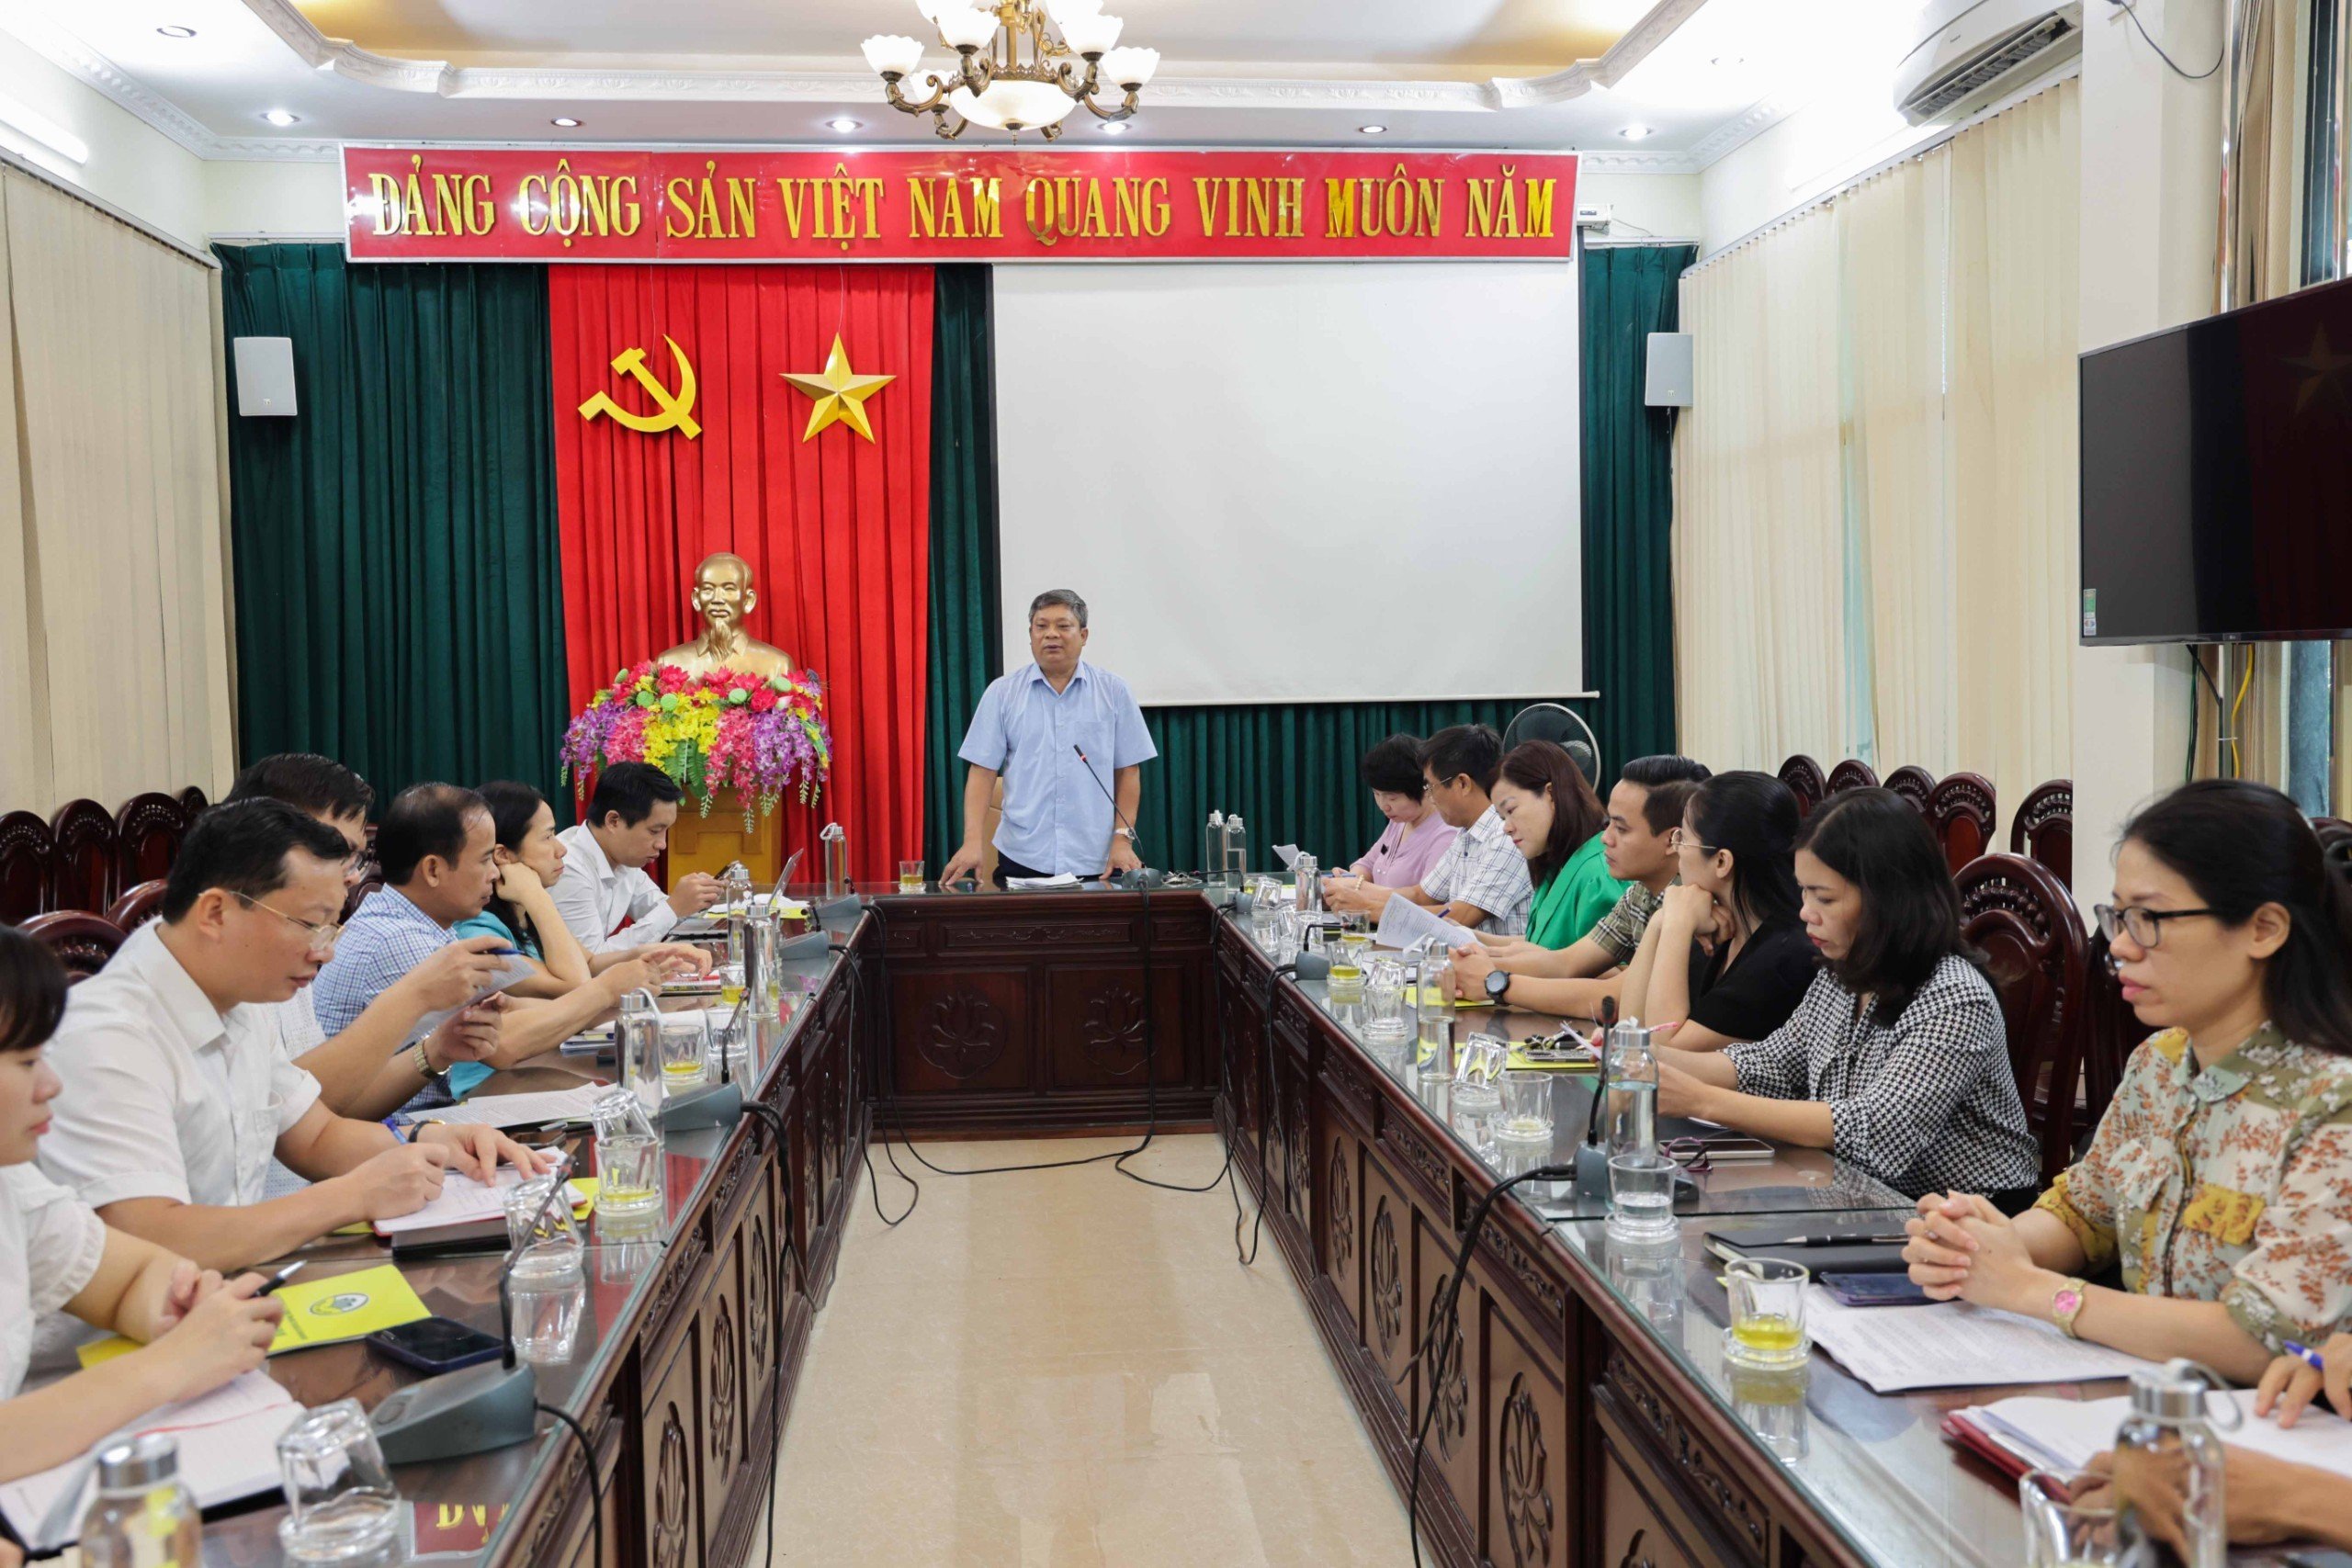 Hội nghị triển khai các nội dung tuyên truyền tỉnh Ninh Bình hoàn thành nhiệm vụ xây dựng nông thôn mới